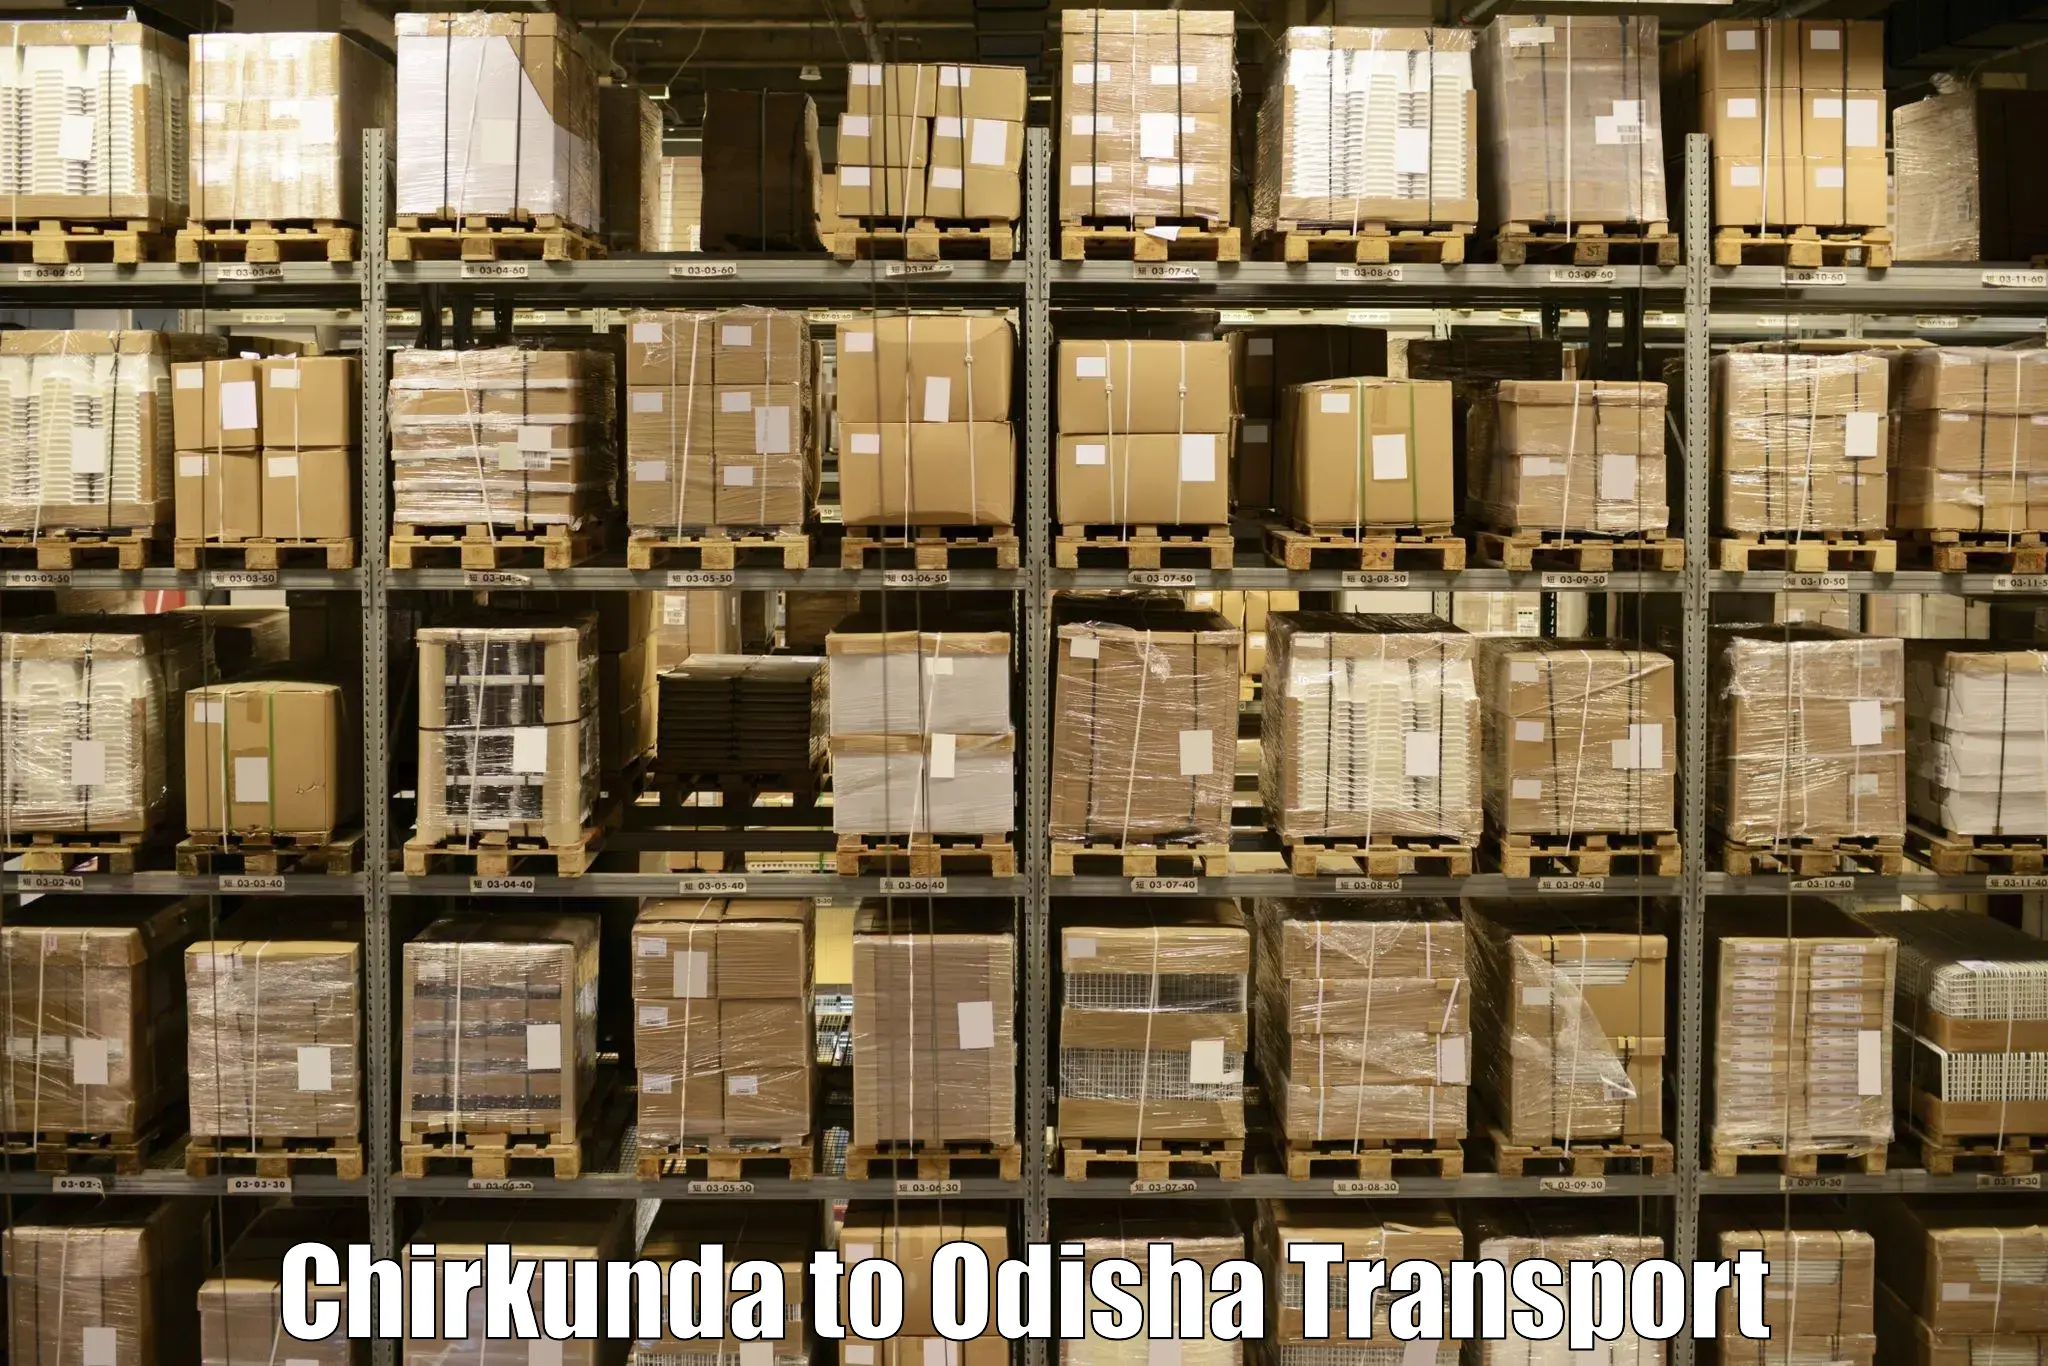 Road transport online services Chirkunda to Keonjhar